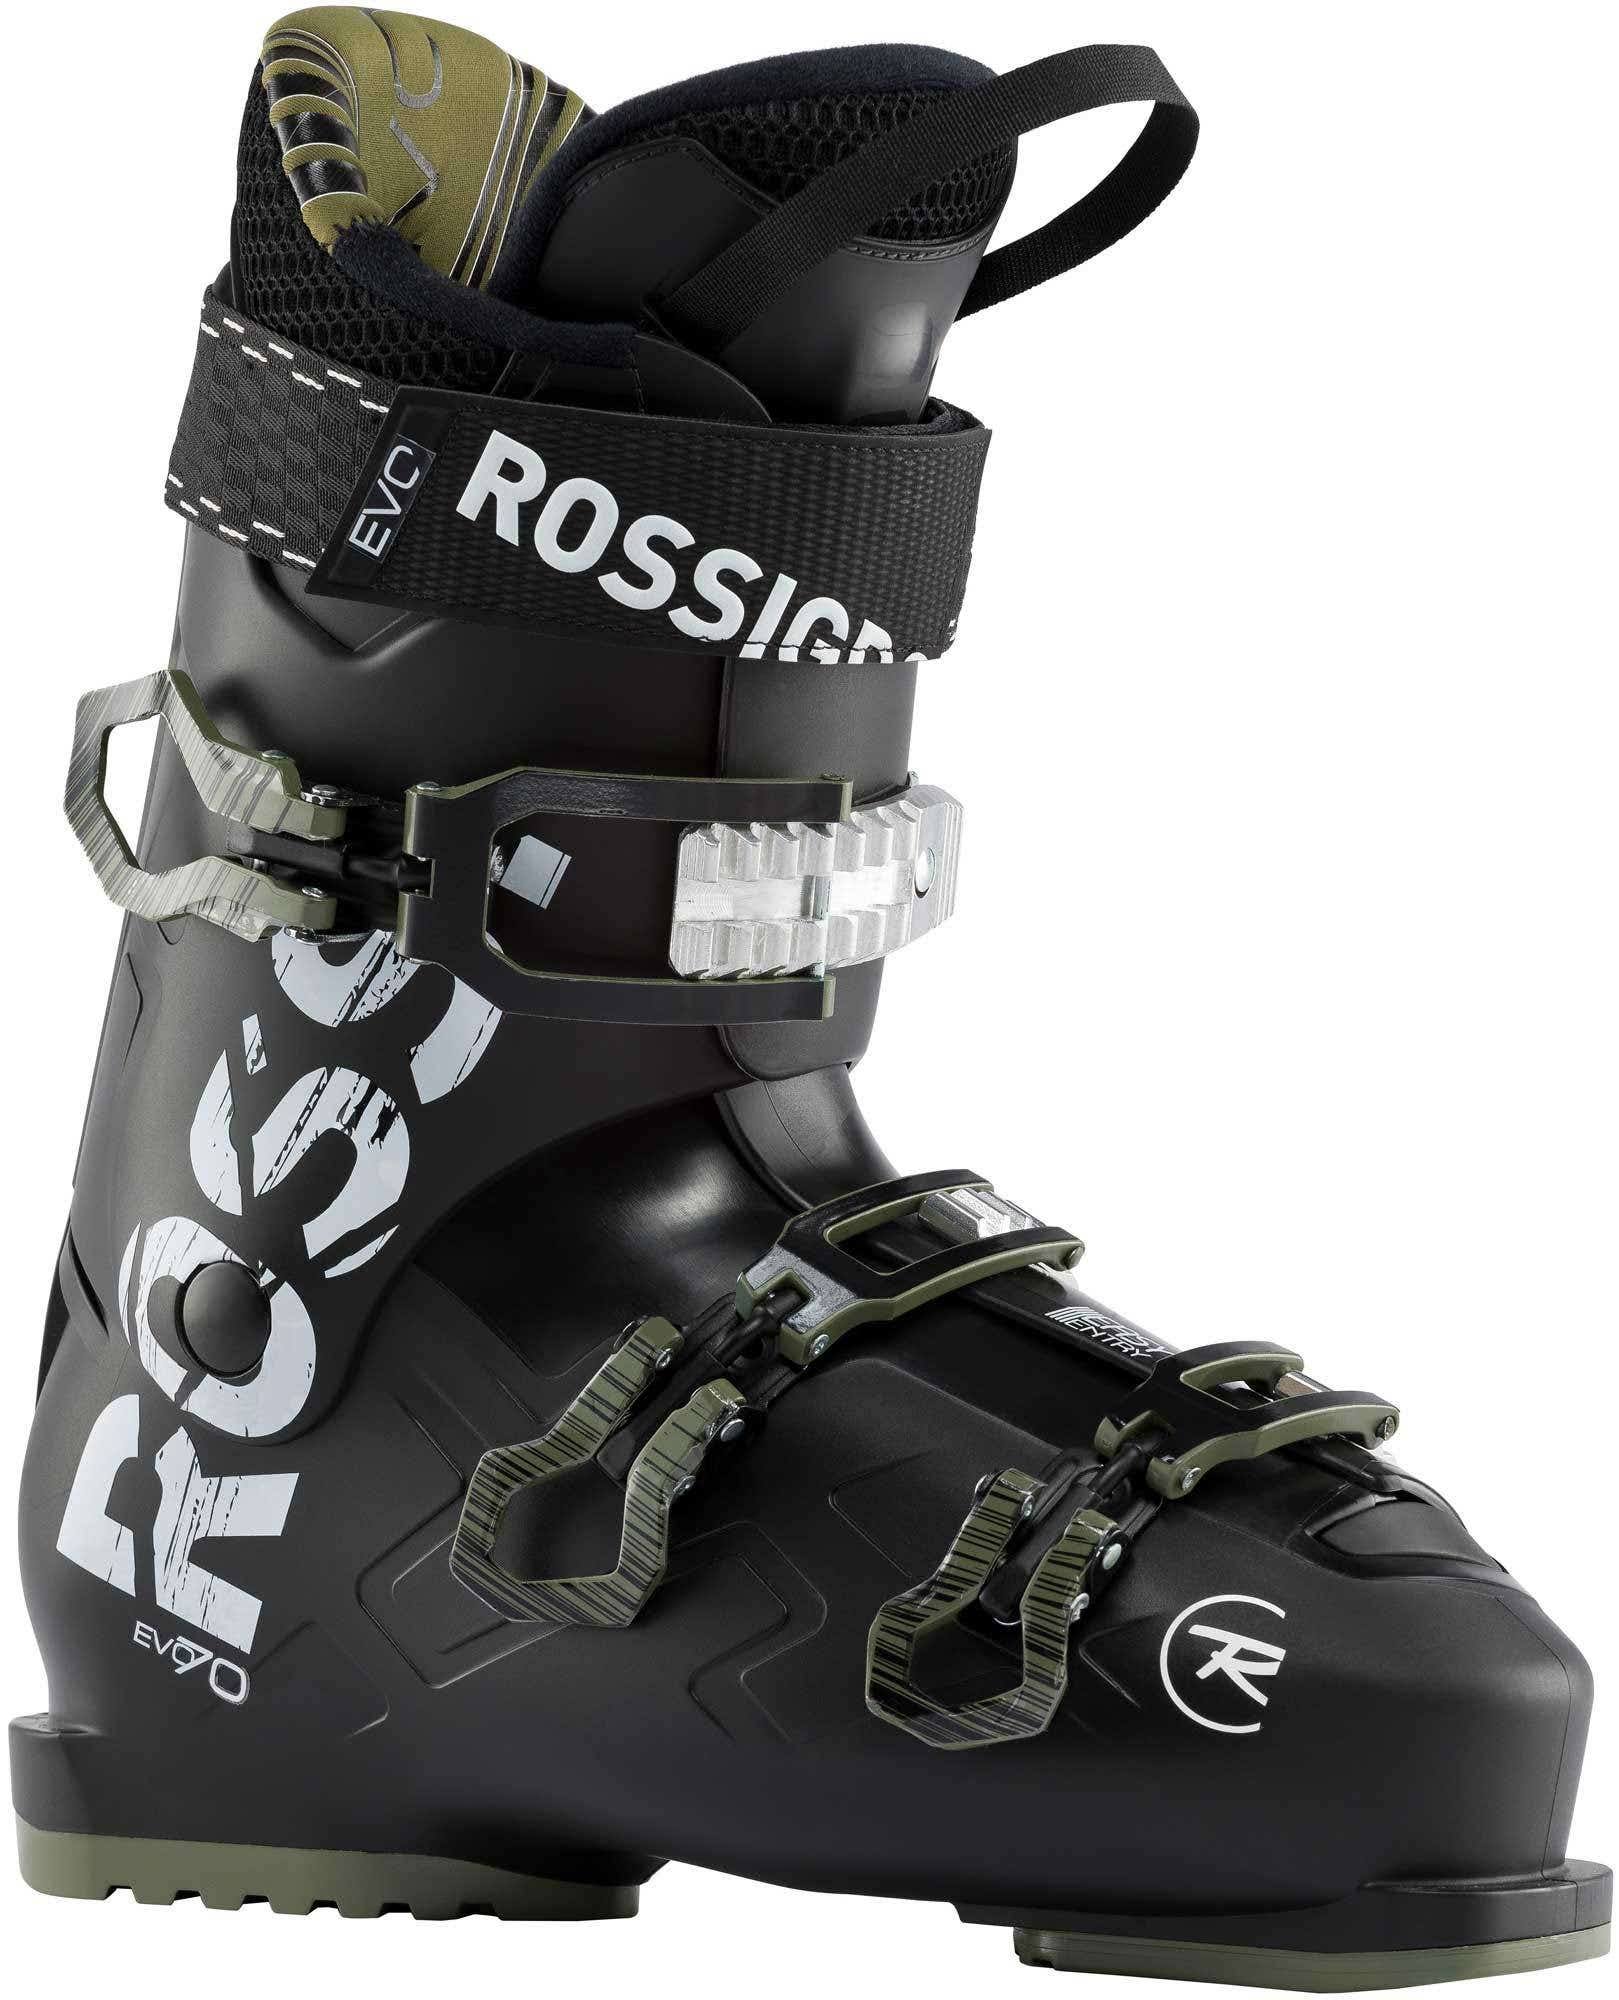 Rossignol Men's Evo 70 Ski Boots - Black/Khaki